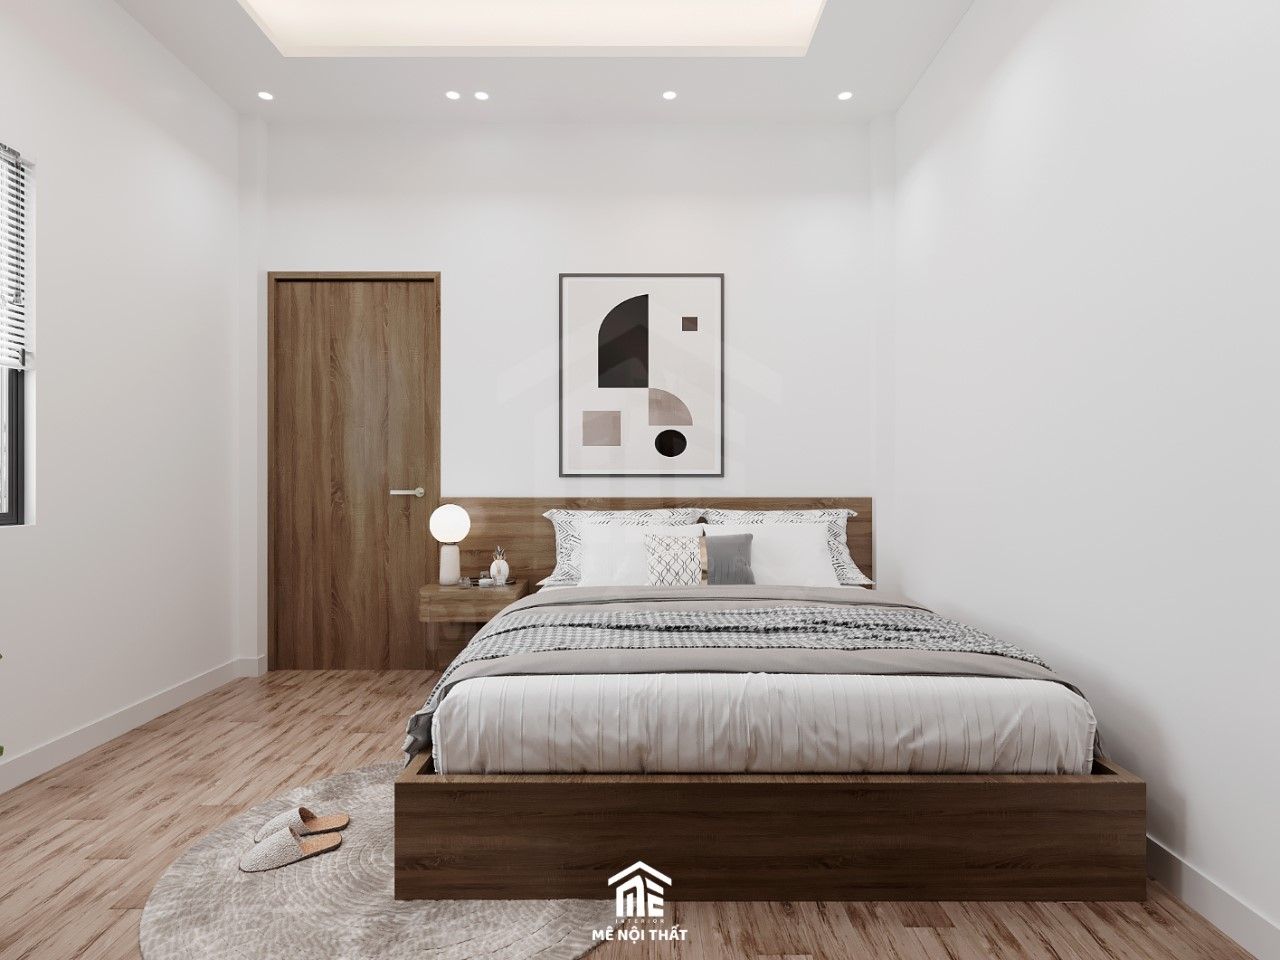 Phòng ngủ hiện đại với tông màu trắng sử dụng nội thất màu gỗ trầm tối giản với giường ngủ